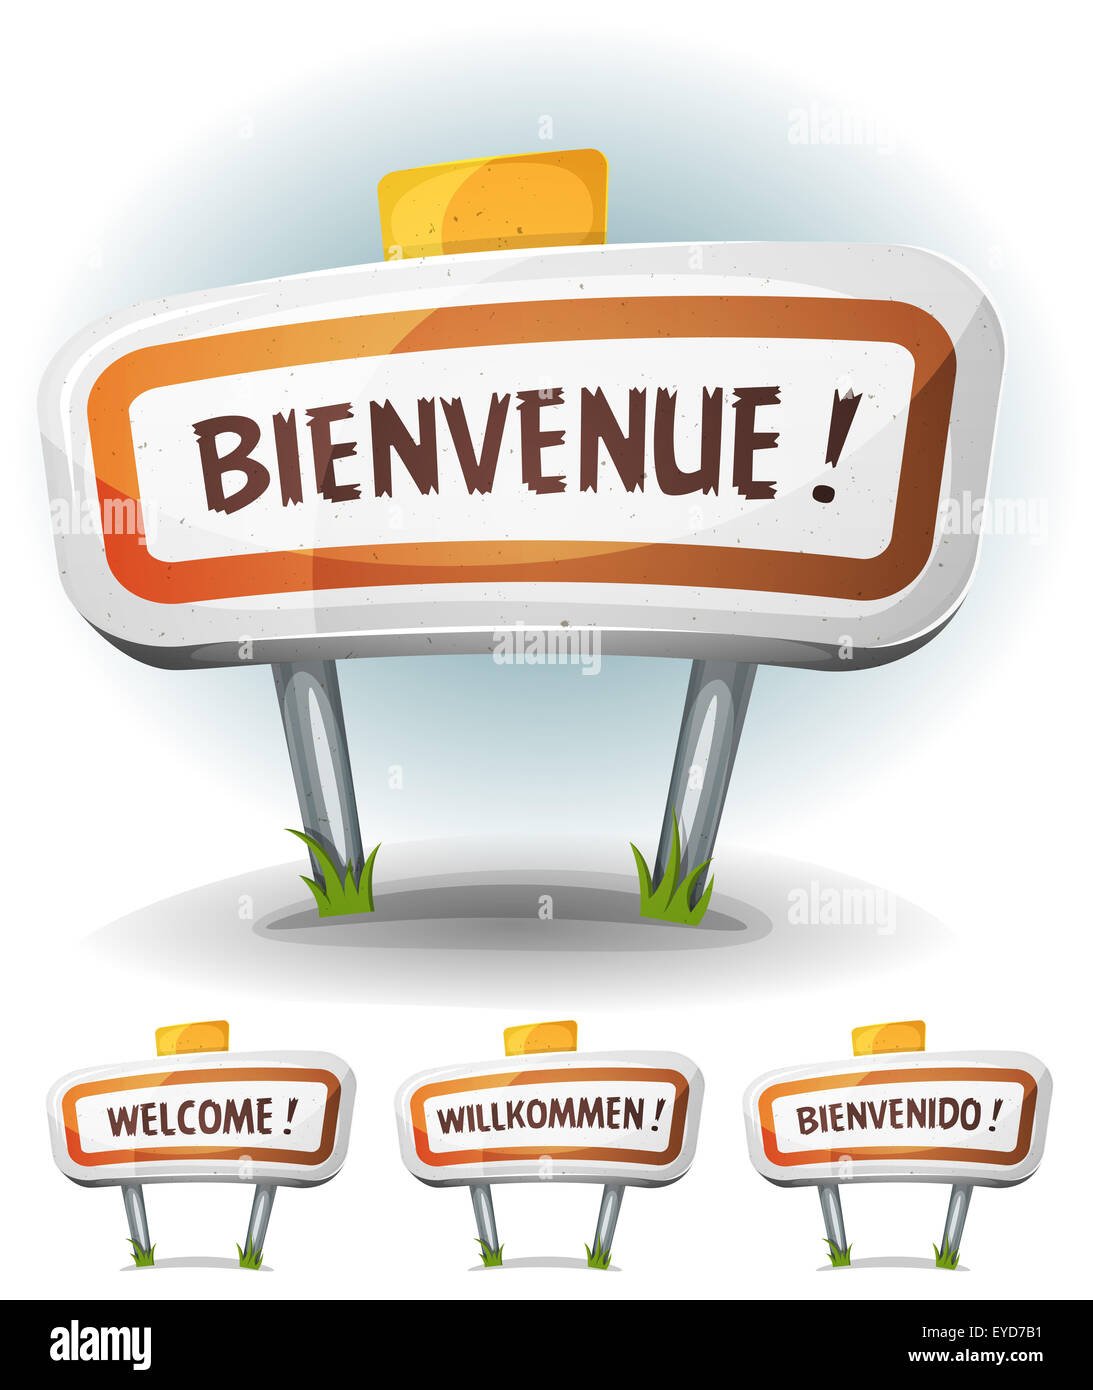 Abbildung einer Cartoon Comic-französische Stadt Straße unterzeichnen in französischer, deutscher, spanischer und englischer Sprache Stockfoto